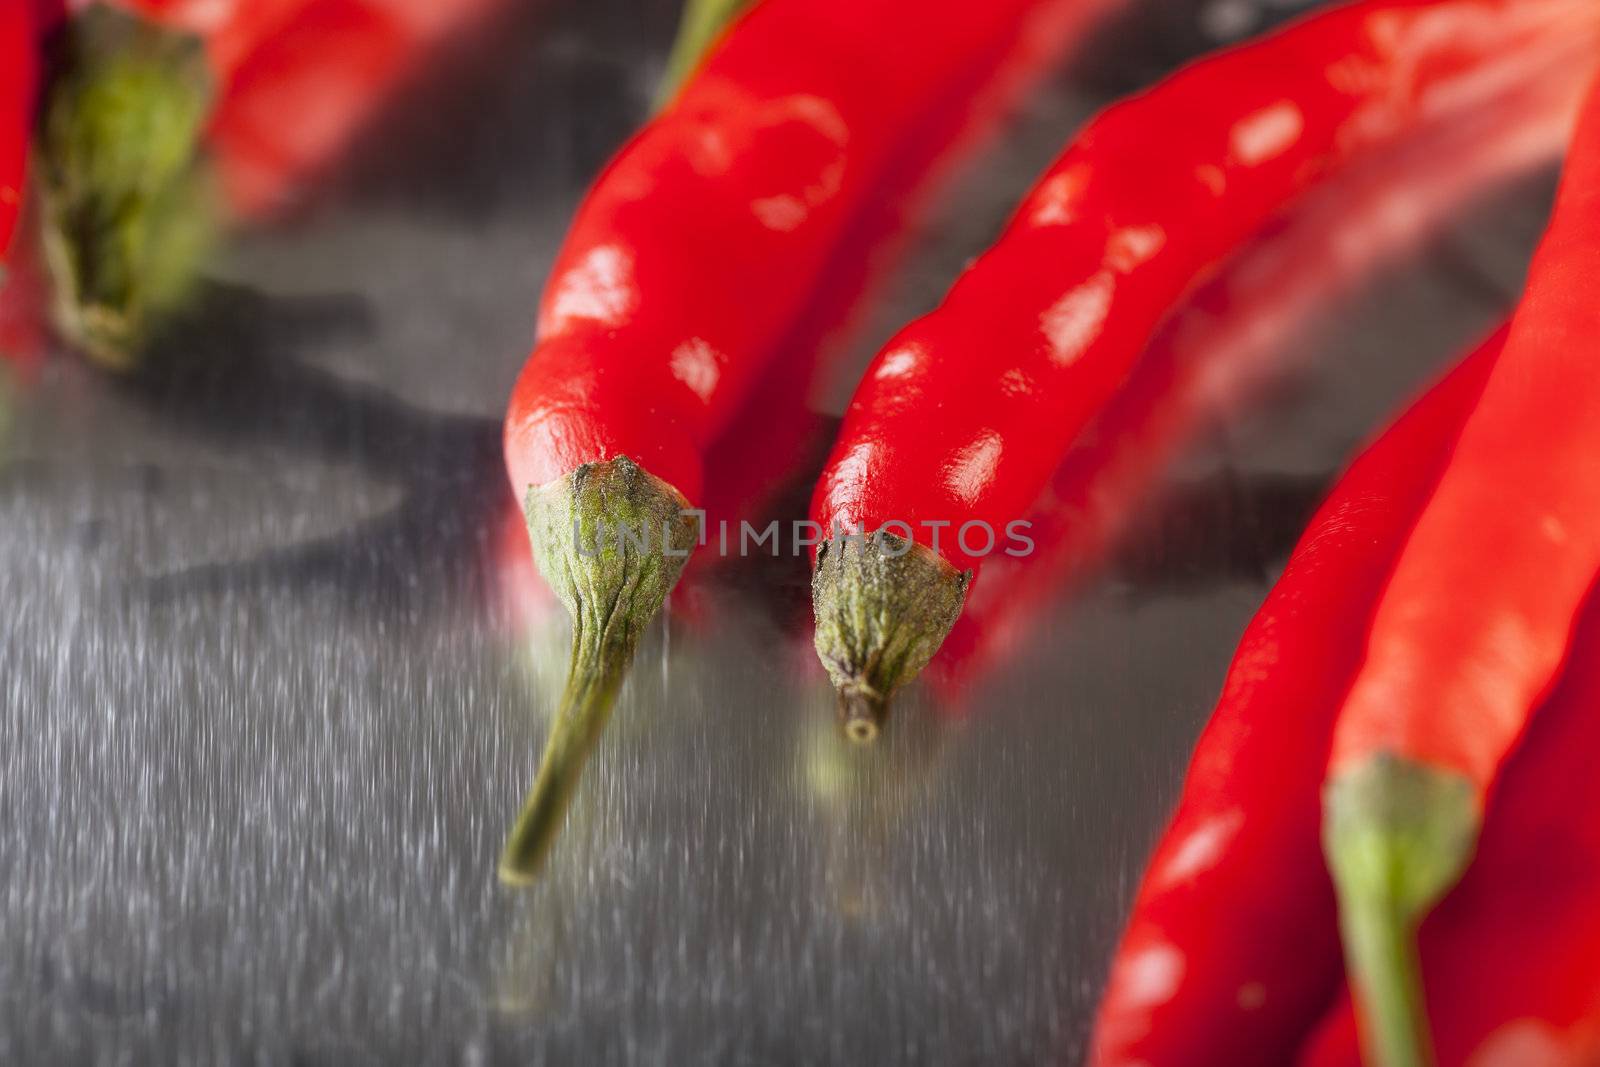 Hot Peppers by charlotteLake